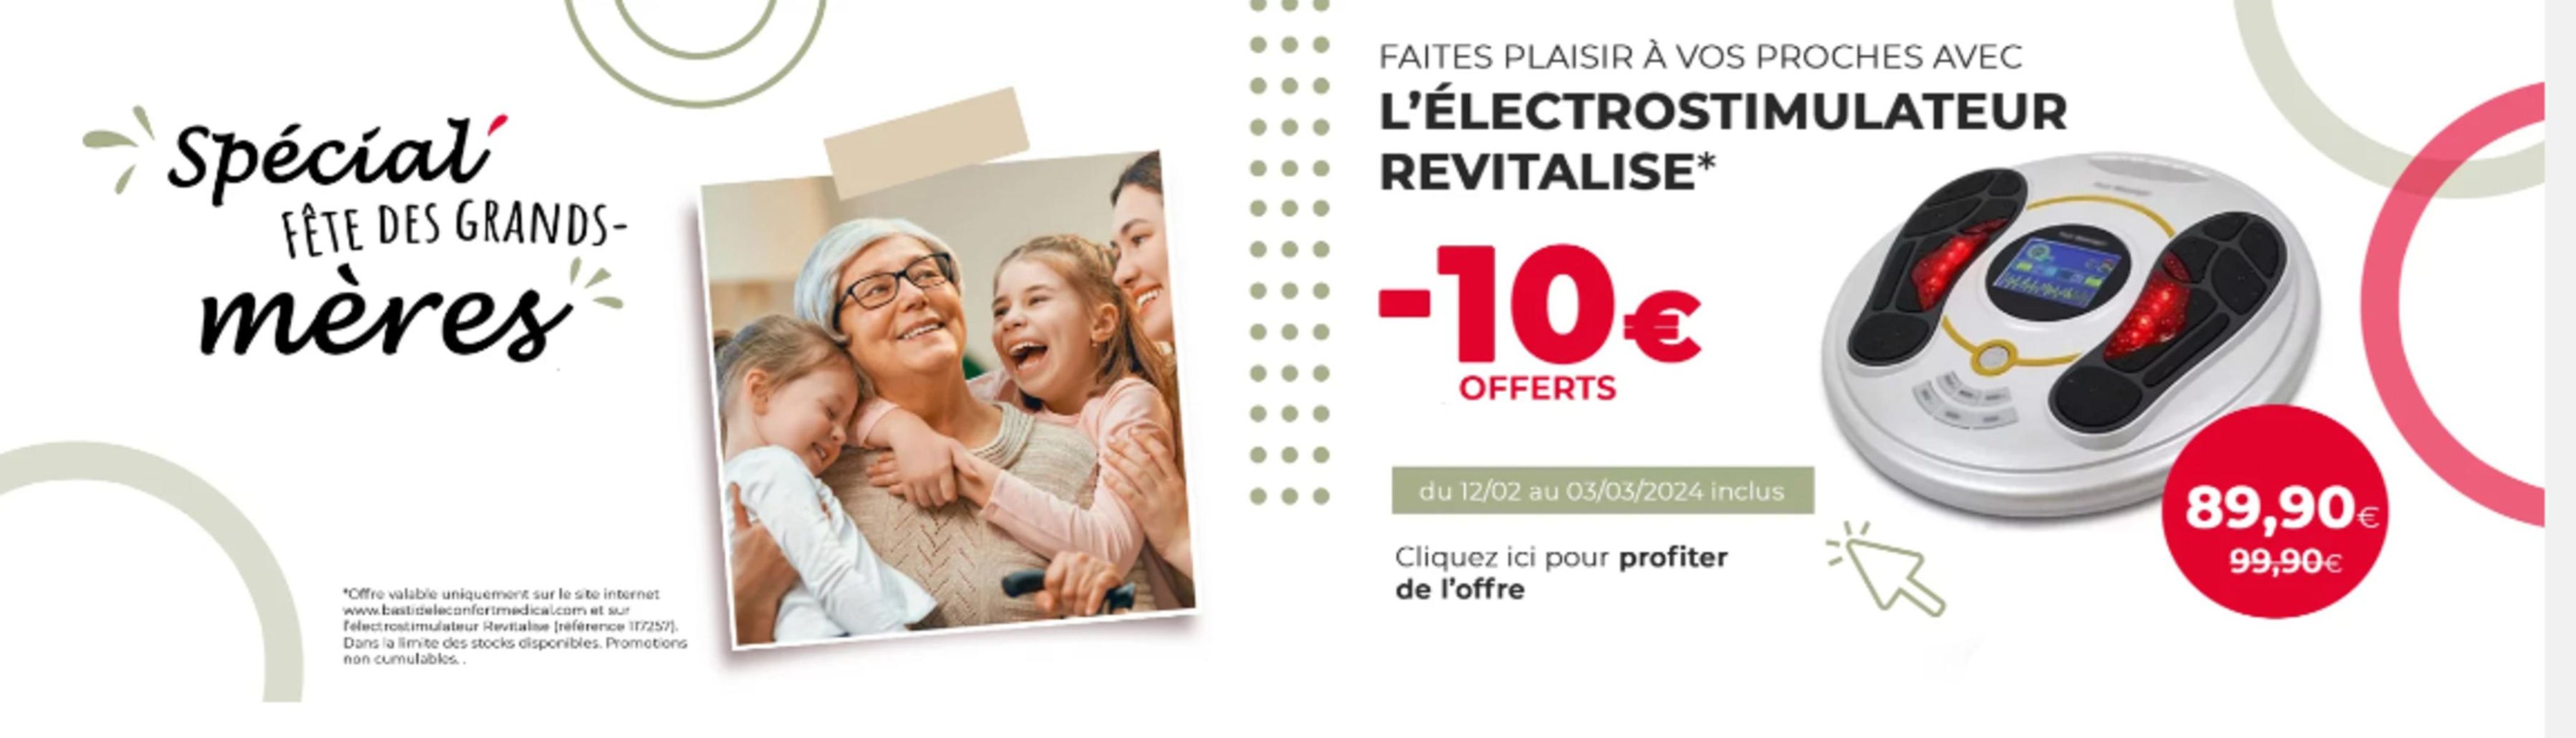 Catalogue L'ÉLECTROSTIMULATEUR REVITALISE* -10€ OFFERTS, page 00001